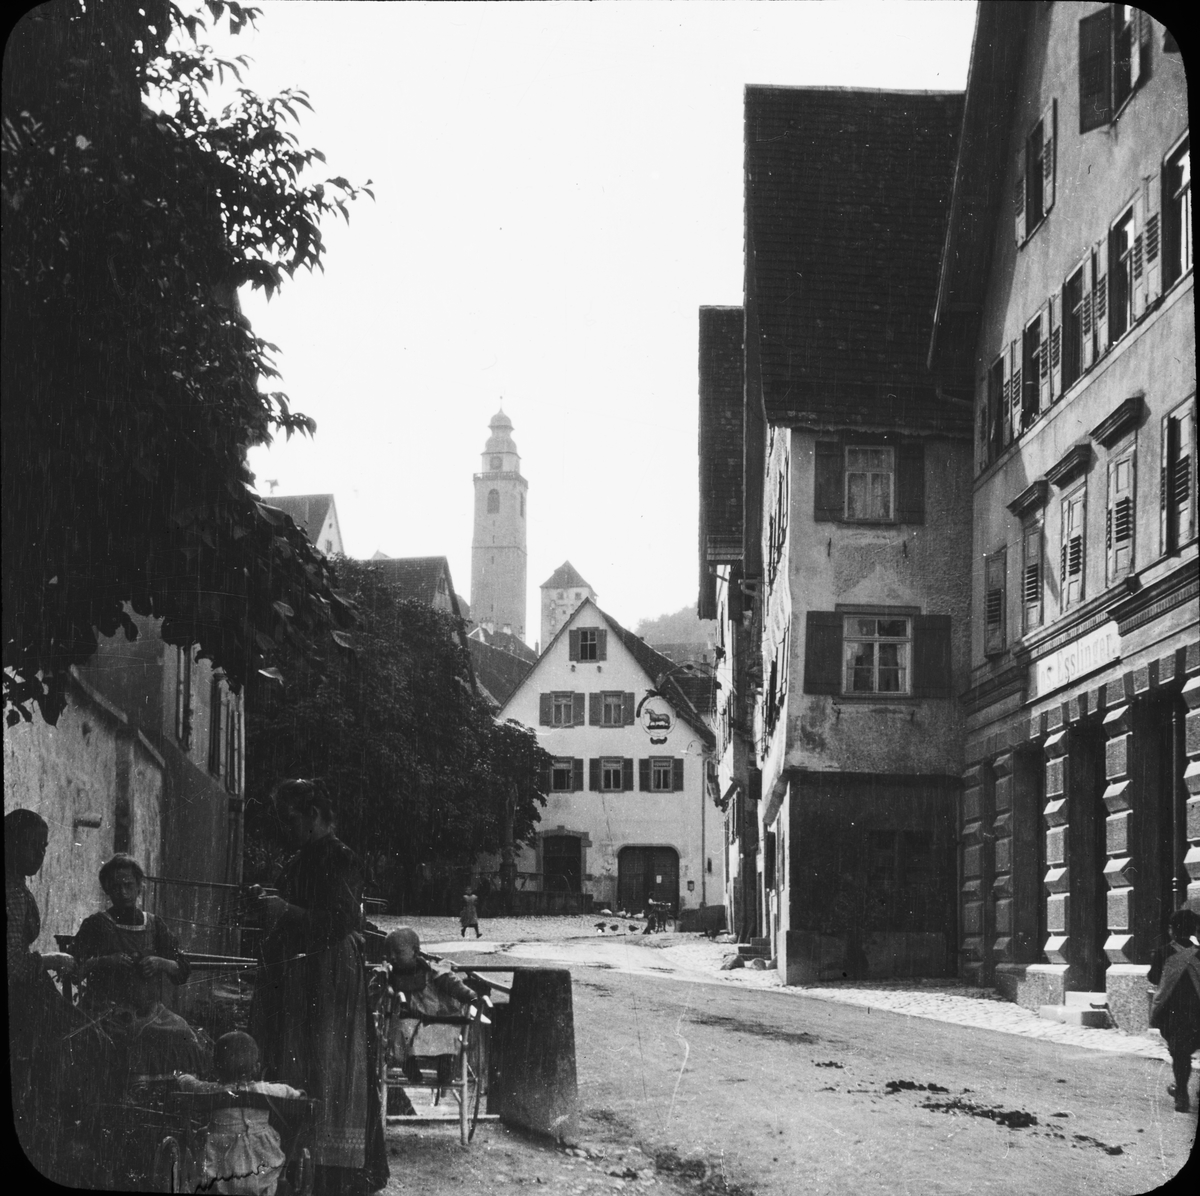 Skioptikonbild med motiv från gata i Horb am Neckar med tornet till Stiftskirche i bakgrunden.
Bilden har förvarats i kartong märkt: Resan 1908. Horb 7. VIII.